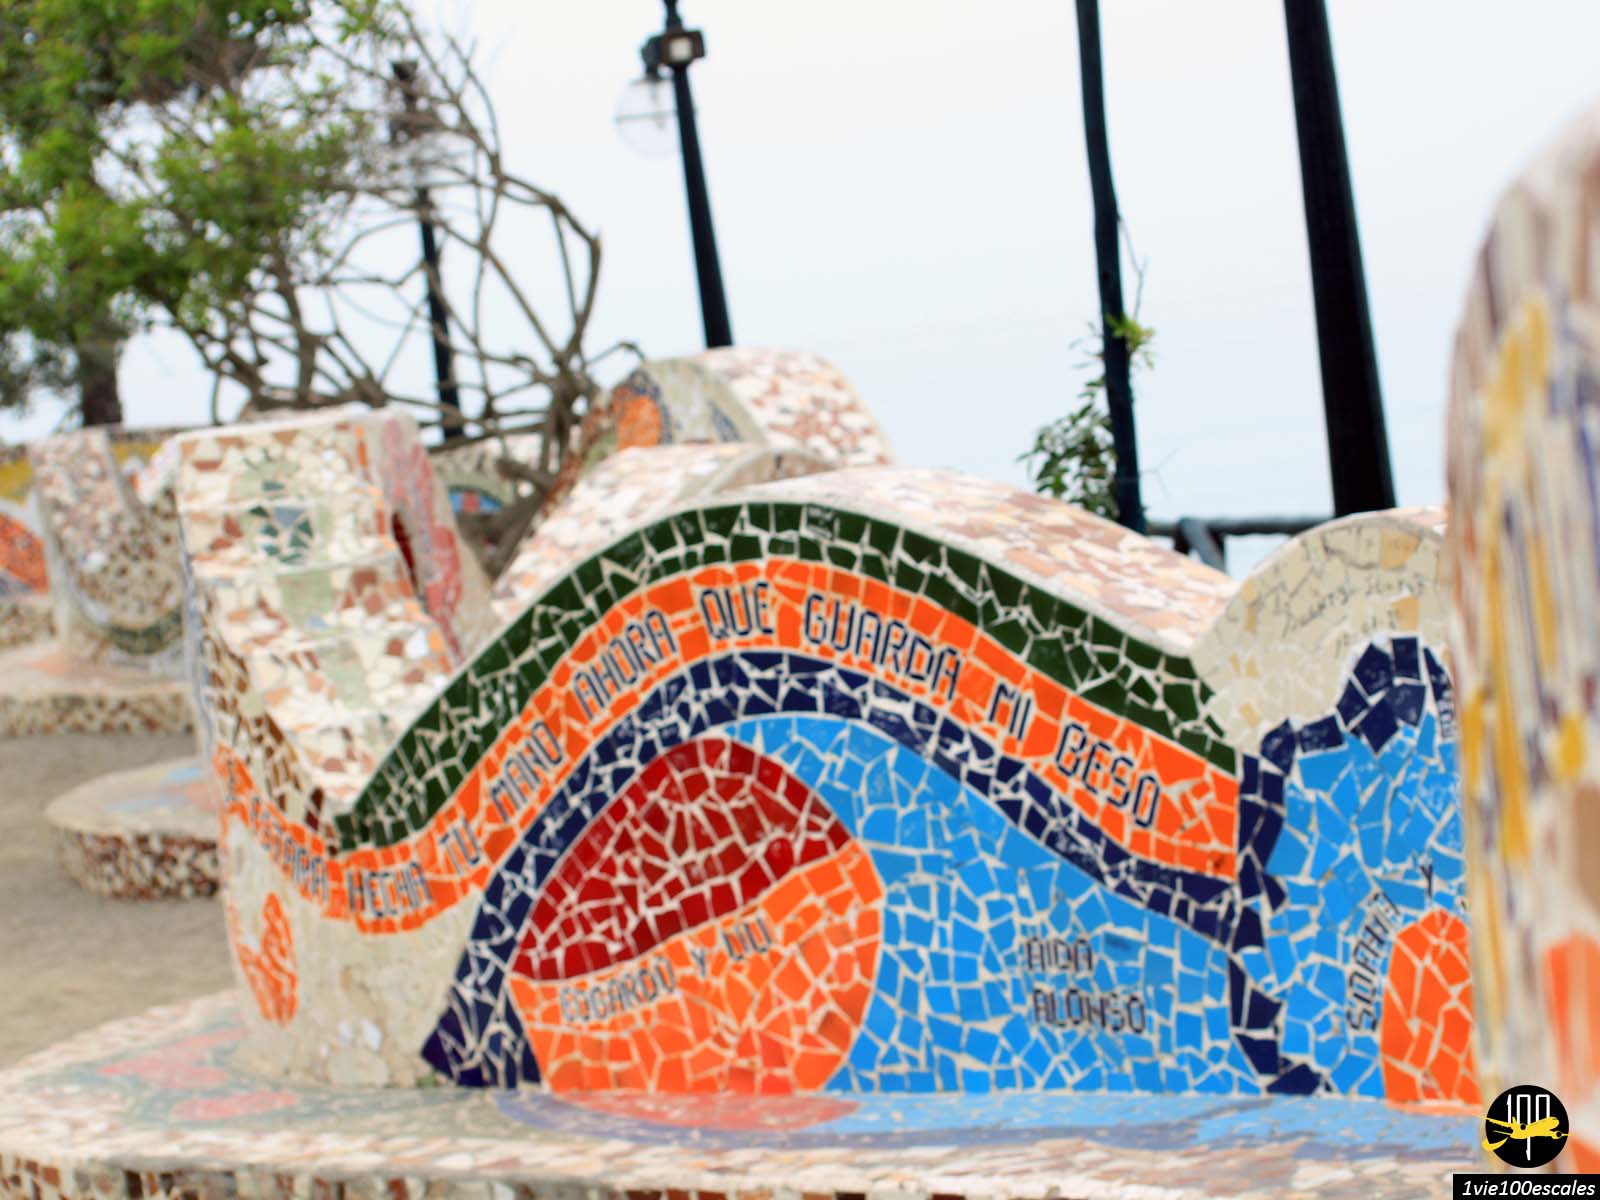 Le long banc incurvé, qui a été orné de mosaïques et de phrases romantiques de poètes péruviens qui n'est pas sans rappeler les mosaïques multicolores d'Antoni Gaudí au Parc Güell de Barcelone.